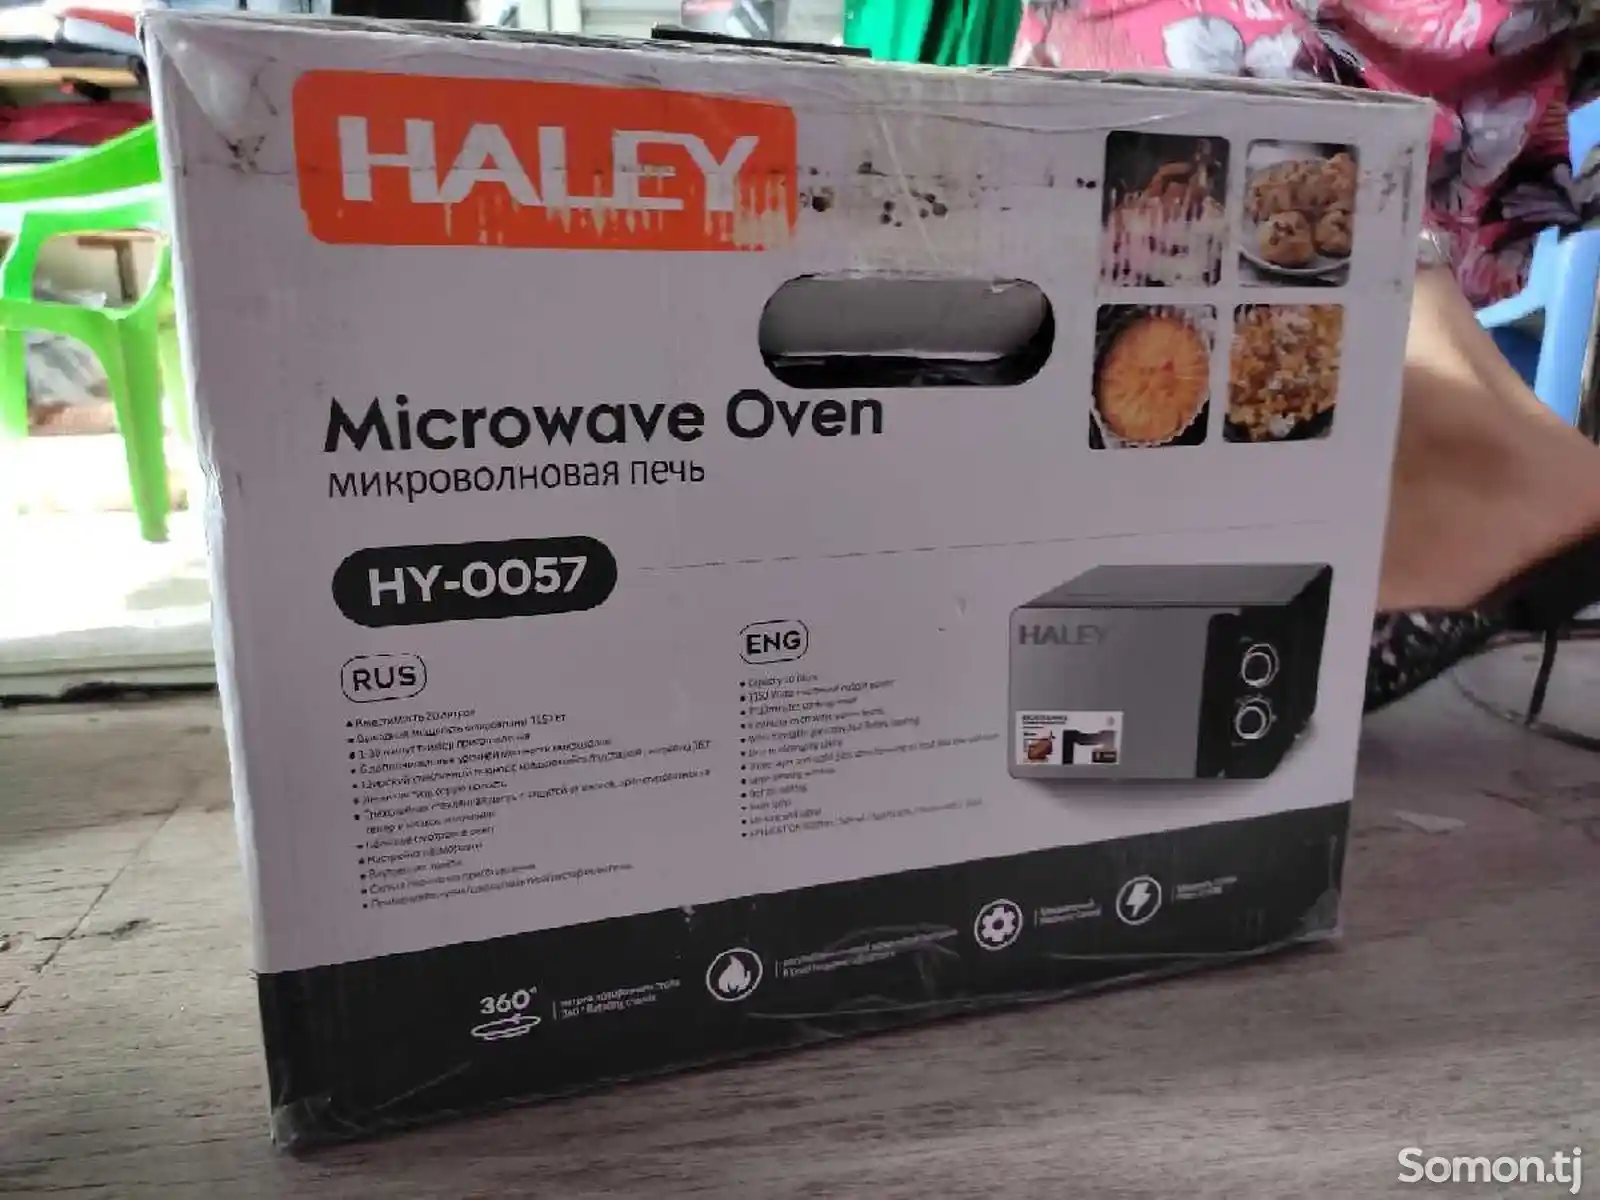 Микроволновая печь Haley Hy-0057-2